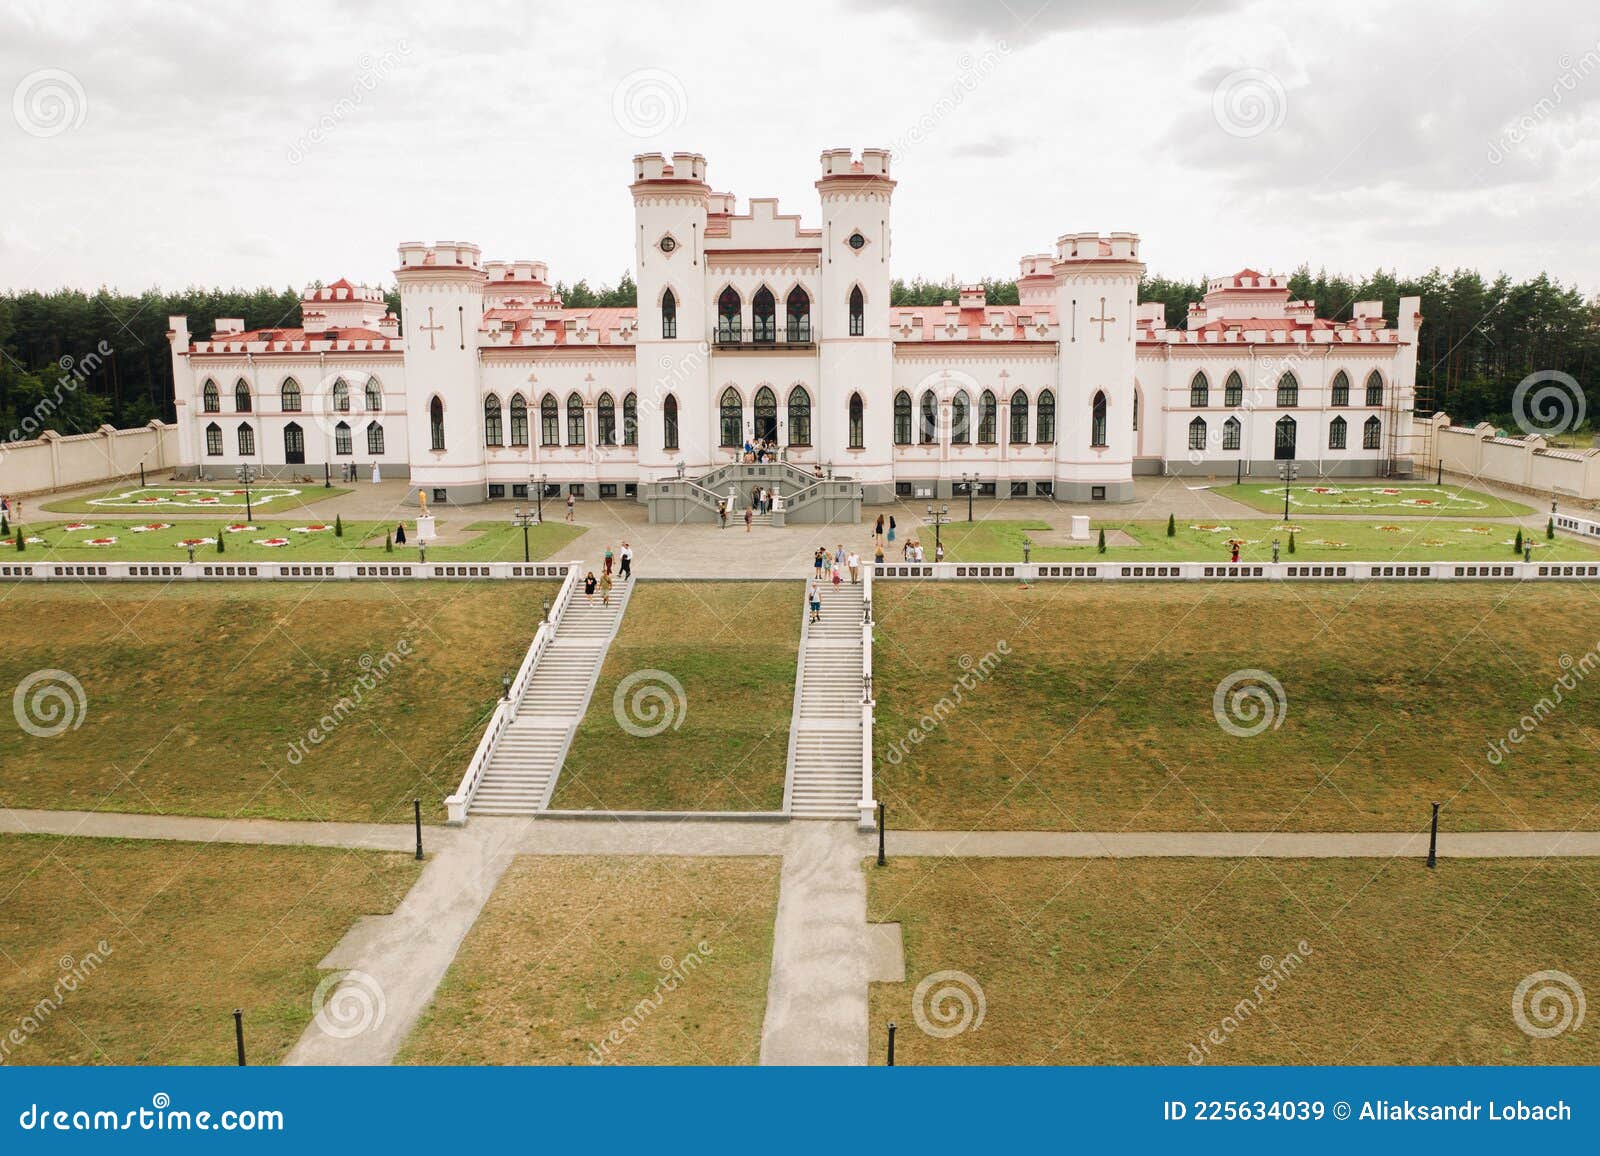 summer kossovsky castle in belarus.puslovsky palace